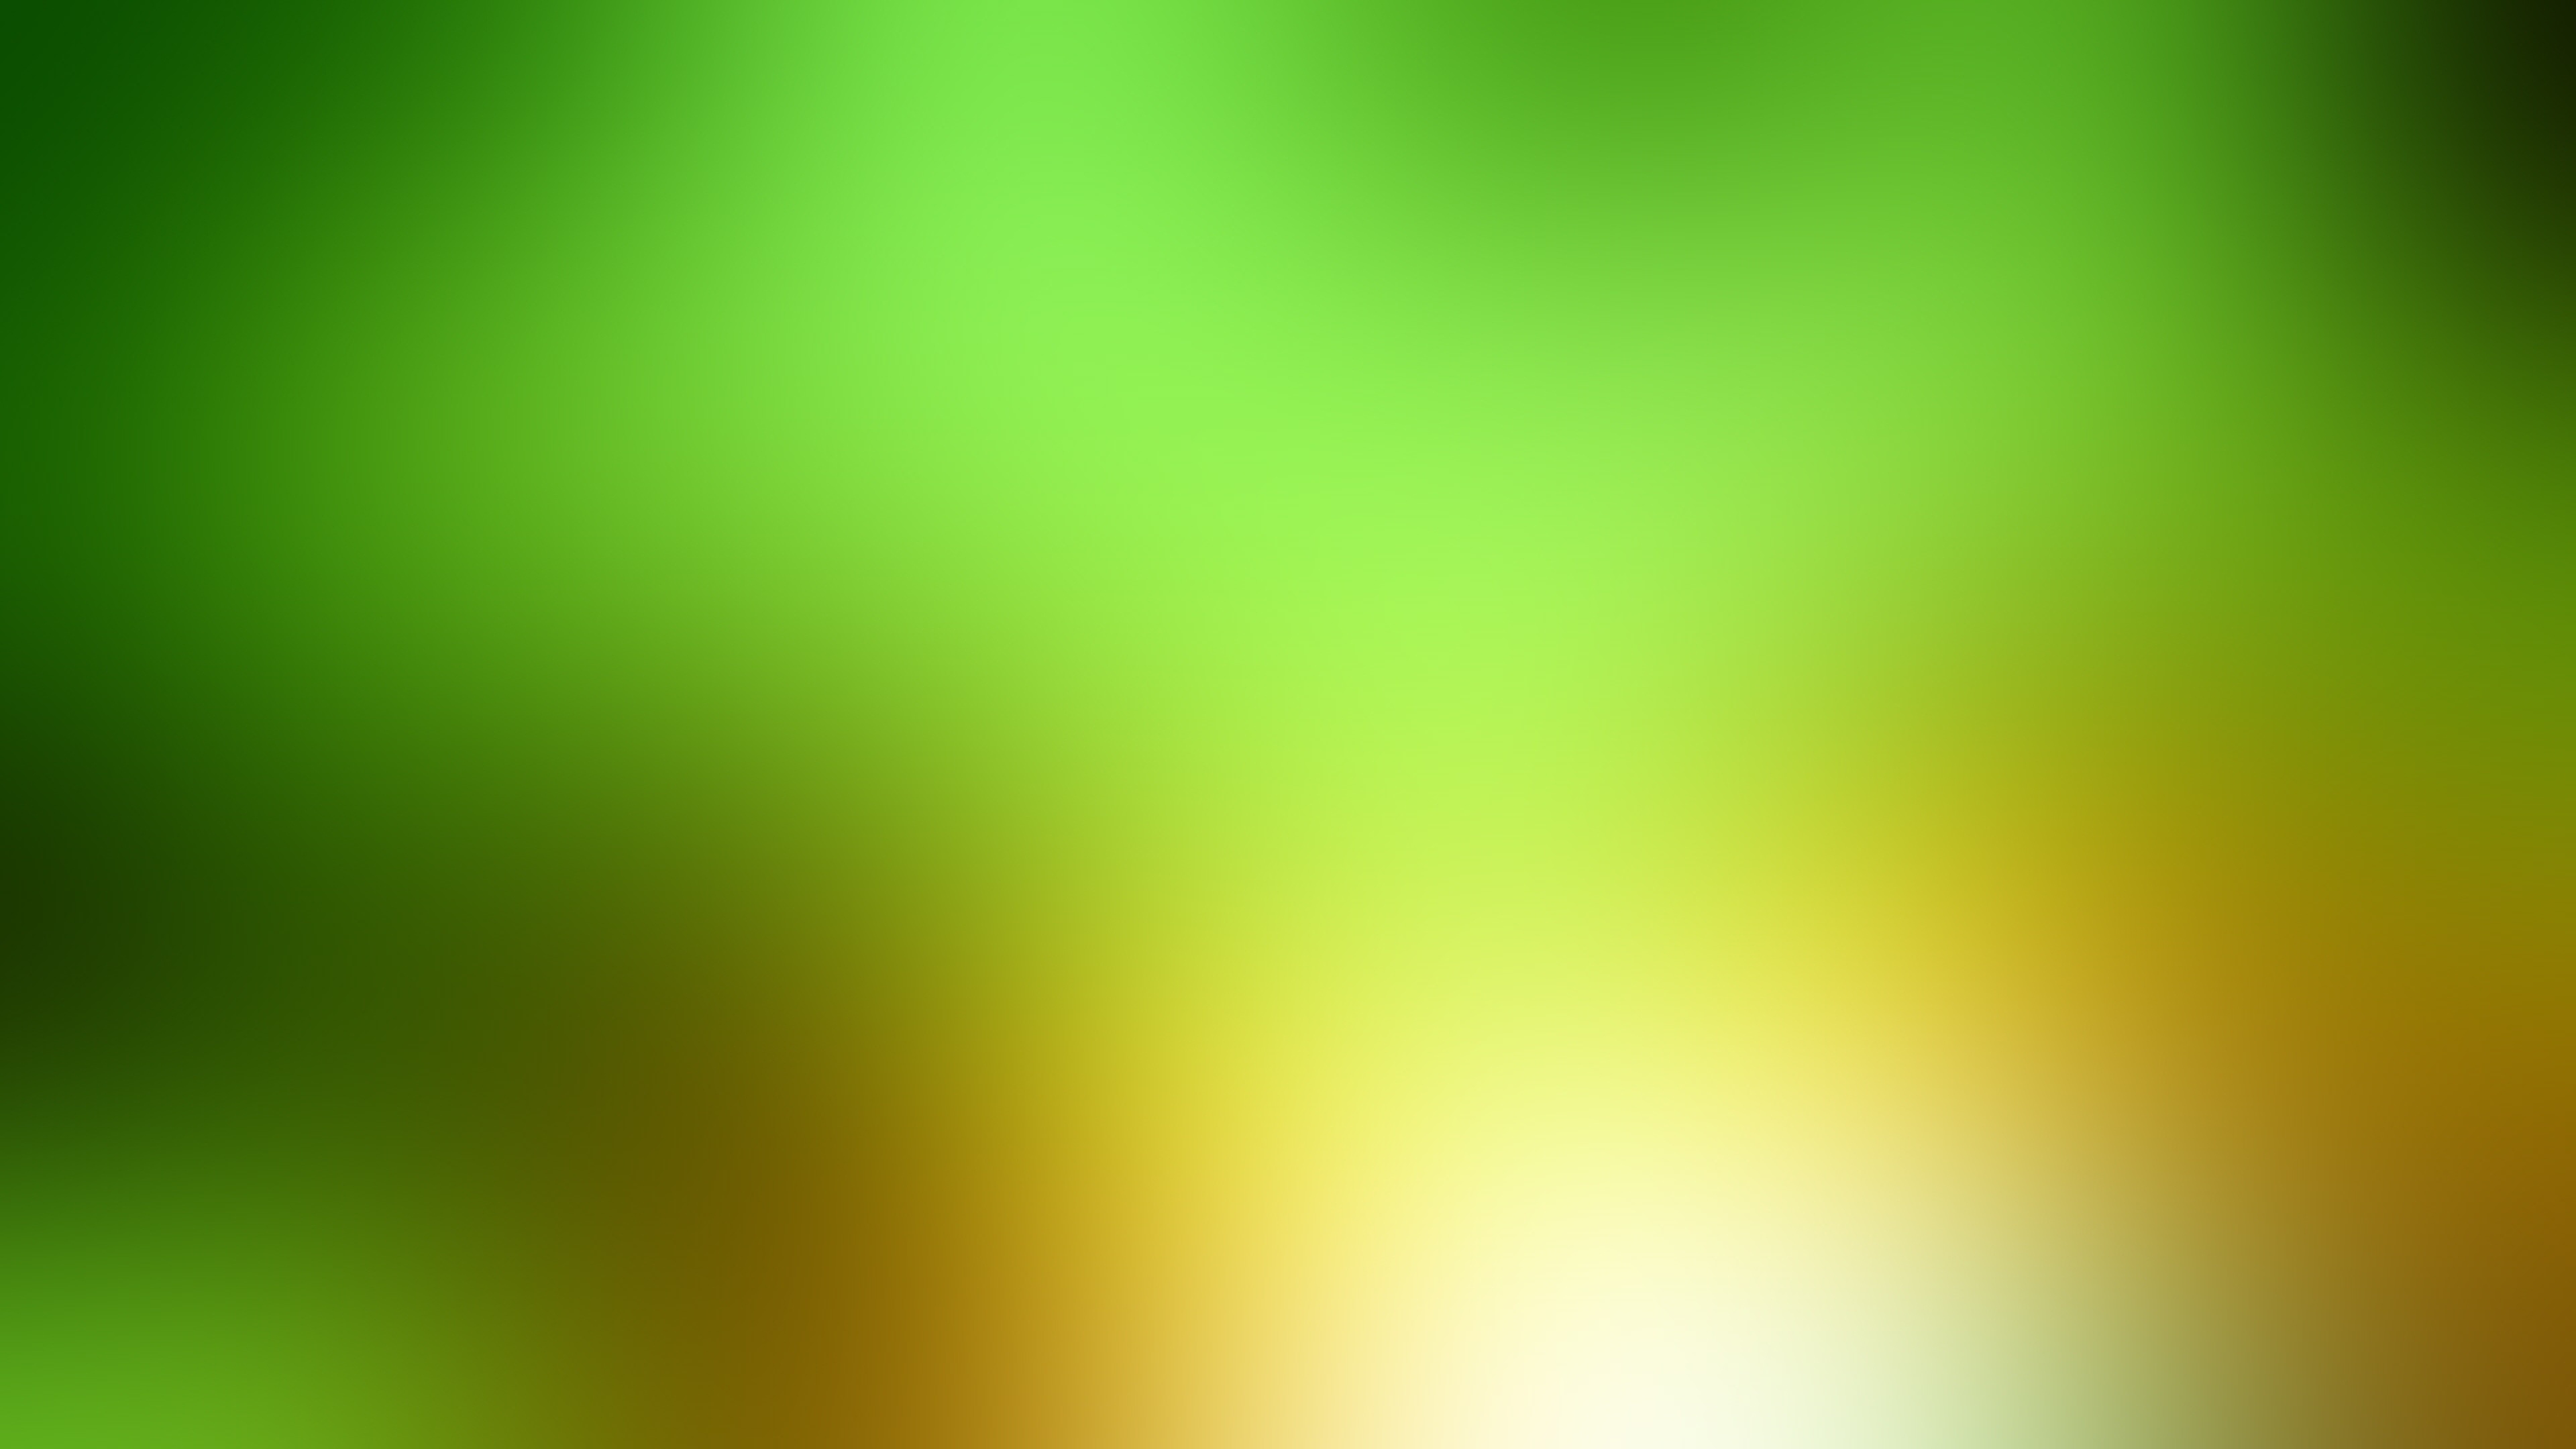 sfondo bianco wallpaper hd 1080p,verde,giallo